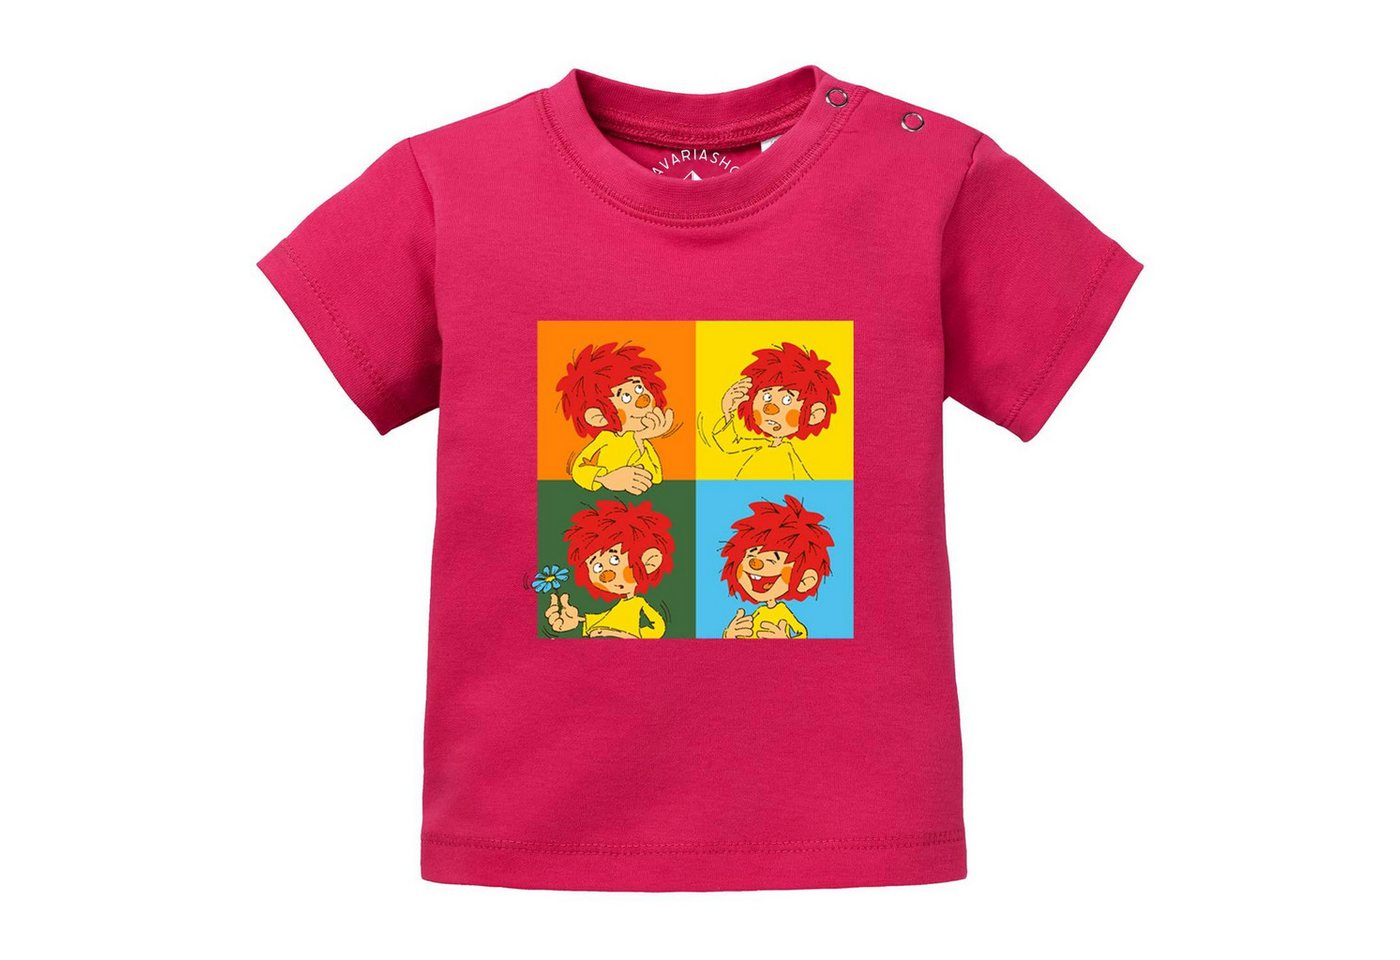 Bavariashop T-Shirt ®Pumuckl Baby T-Shirt Meisterwerk" • Bayerisches Baby Shirt" von Bavariashop